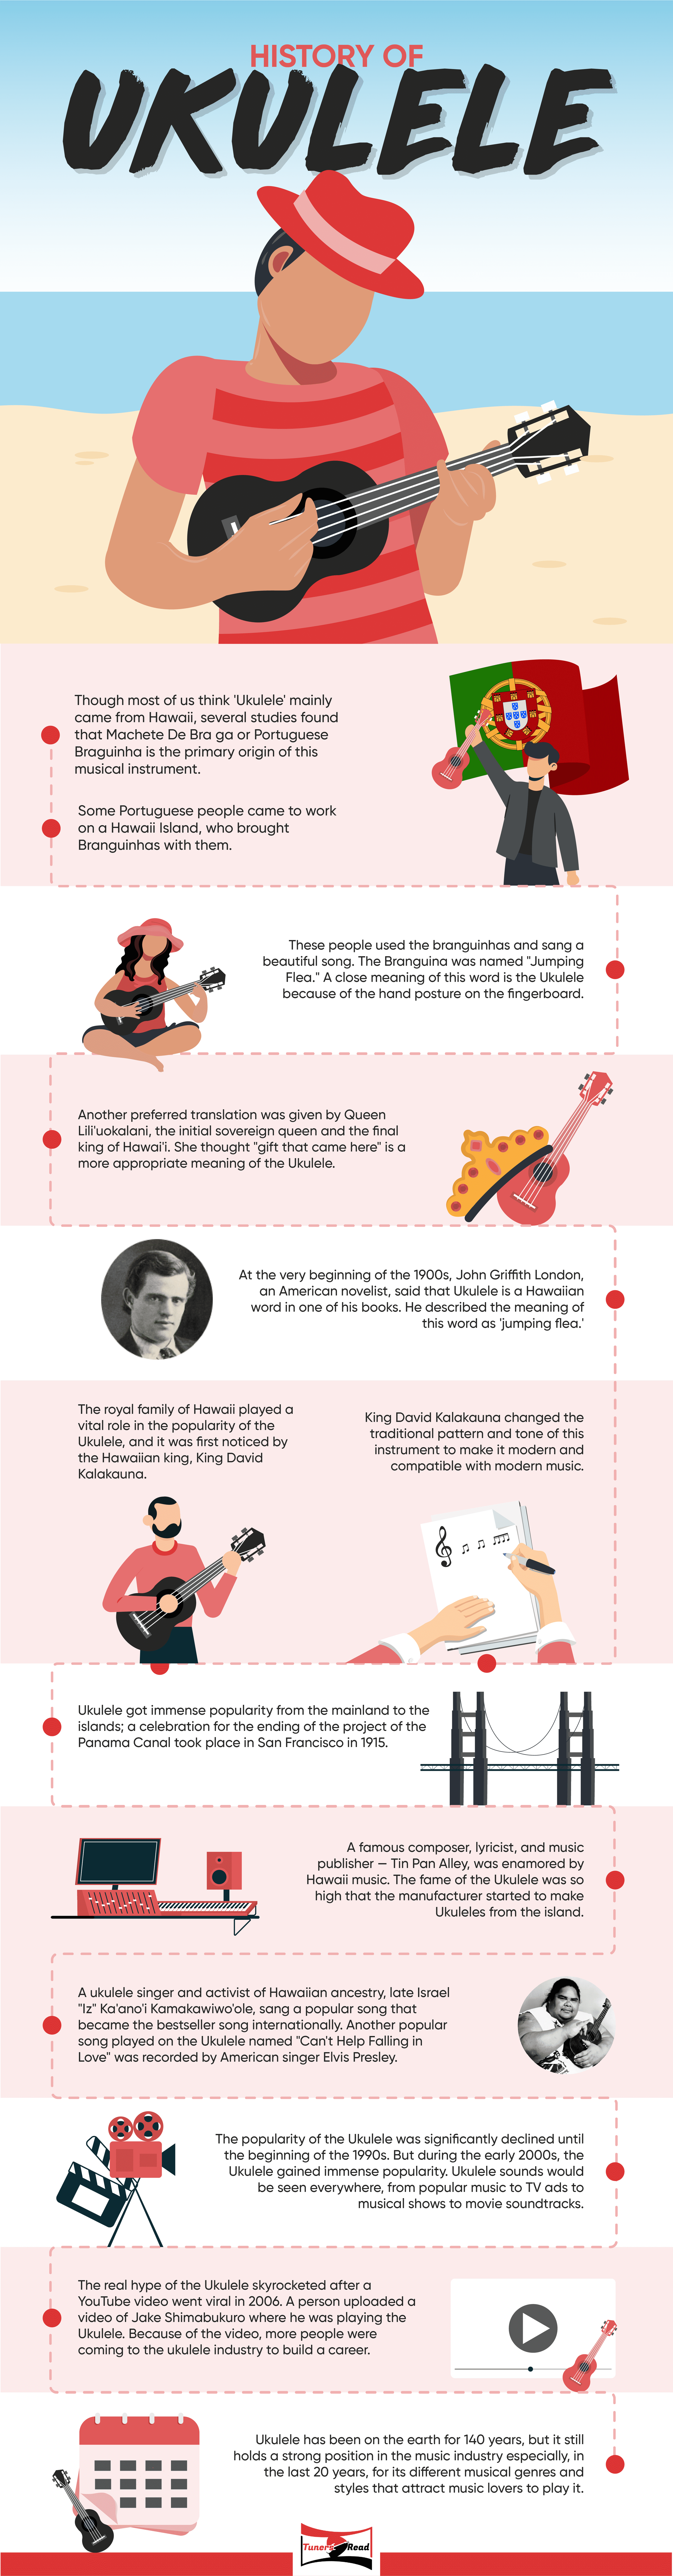 history of ukulele infographic